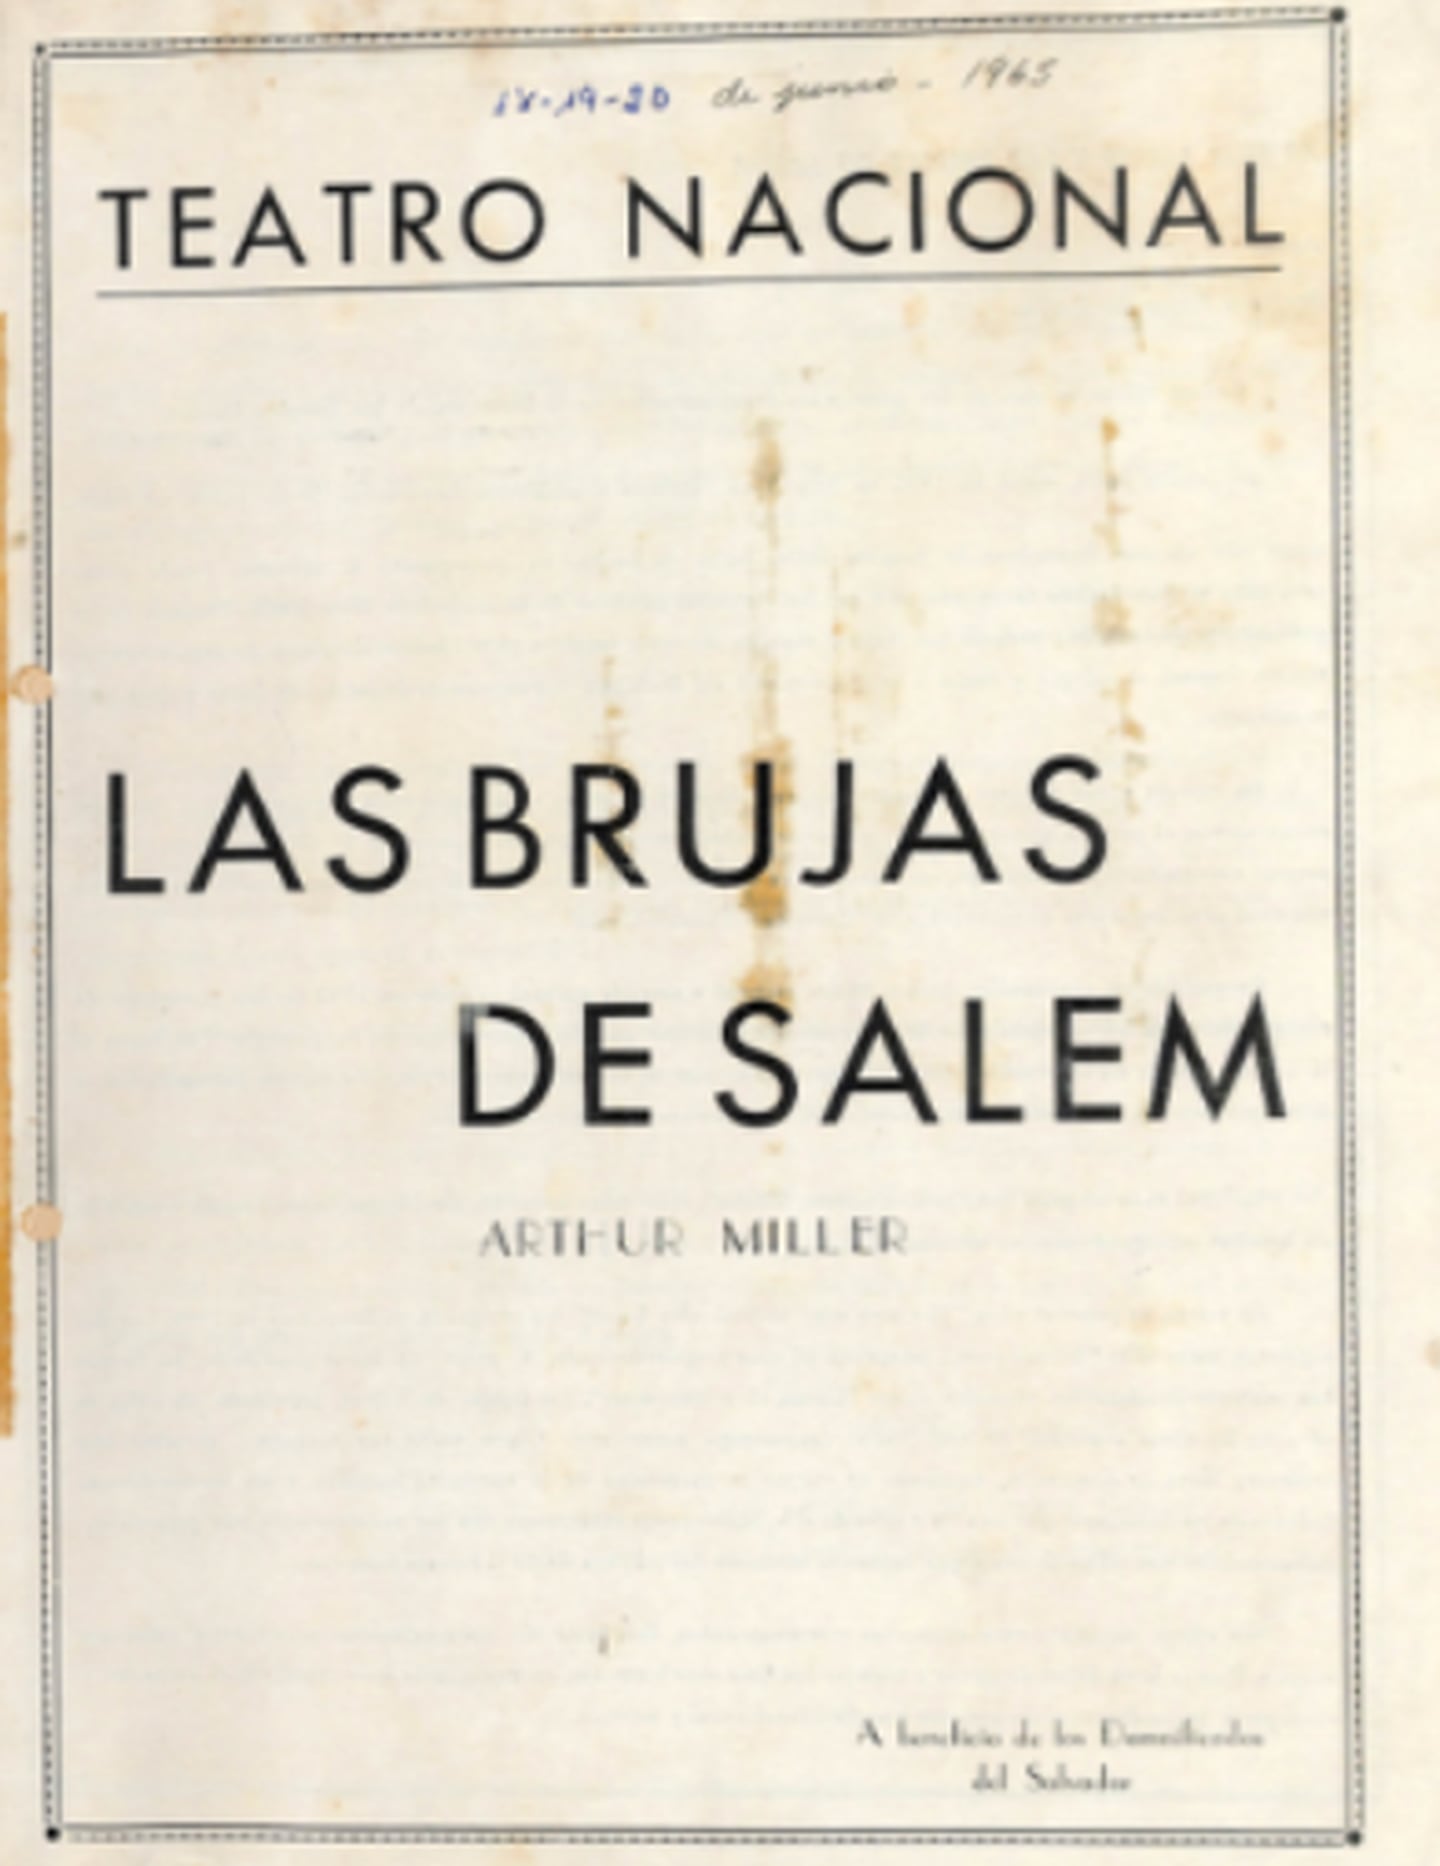 Portada del programa de mano. Archivo institucional del Teatro Nacional.